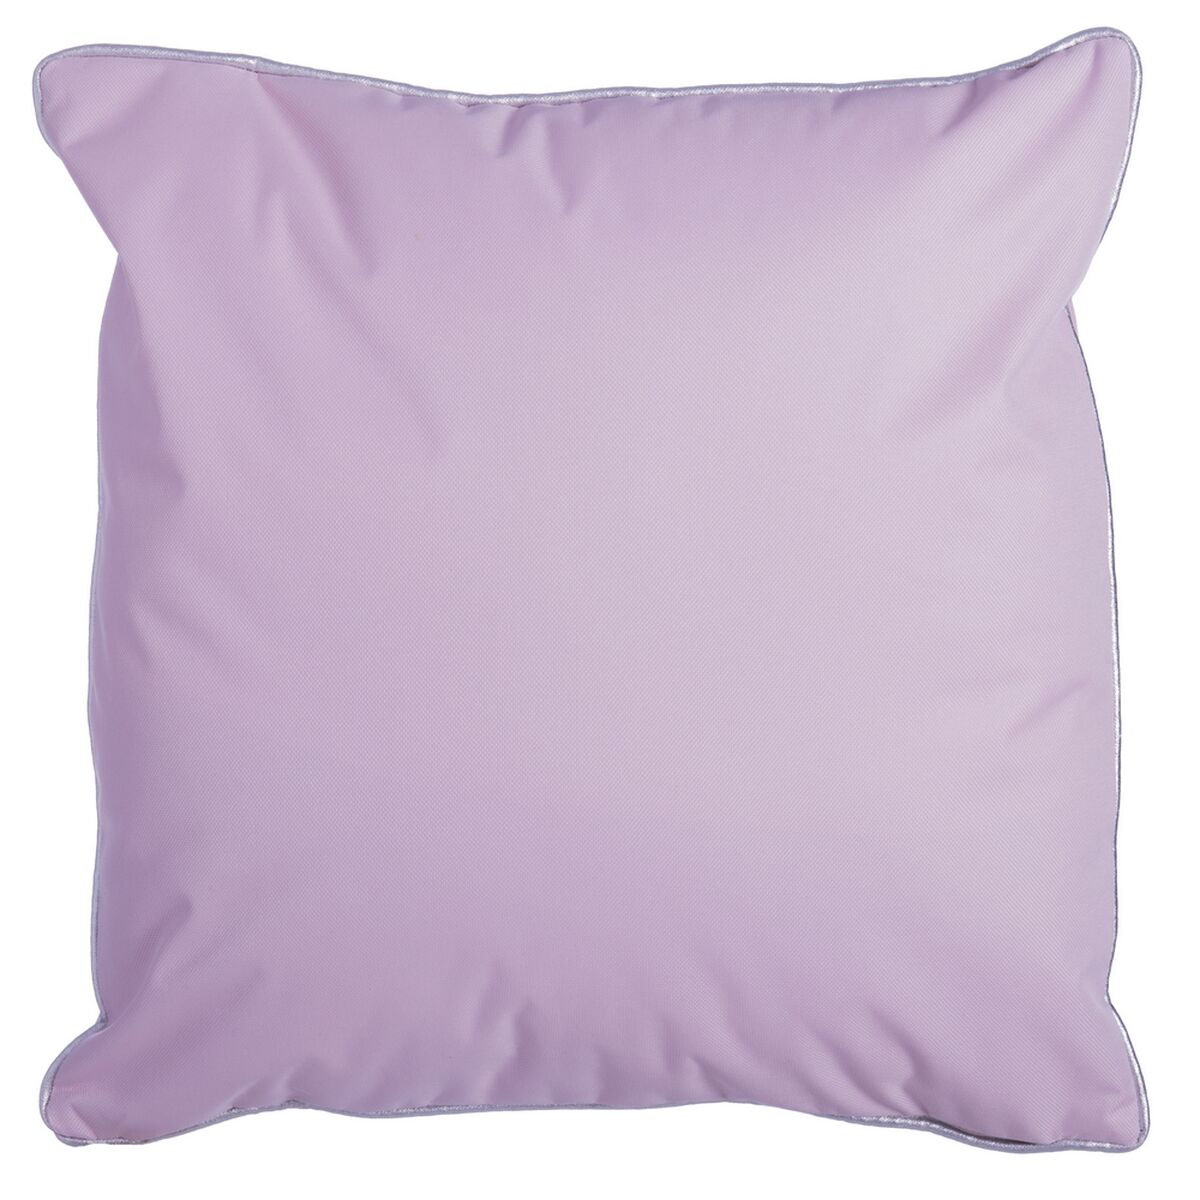 Cushion Paxos 45 x 45 x 12 cm Multicolour